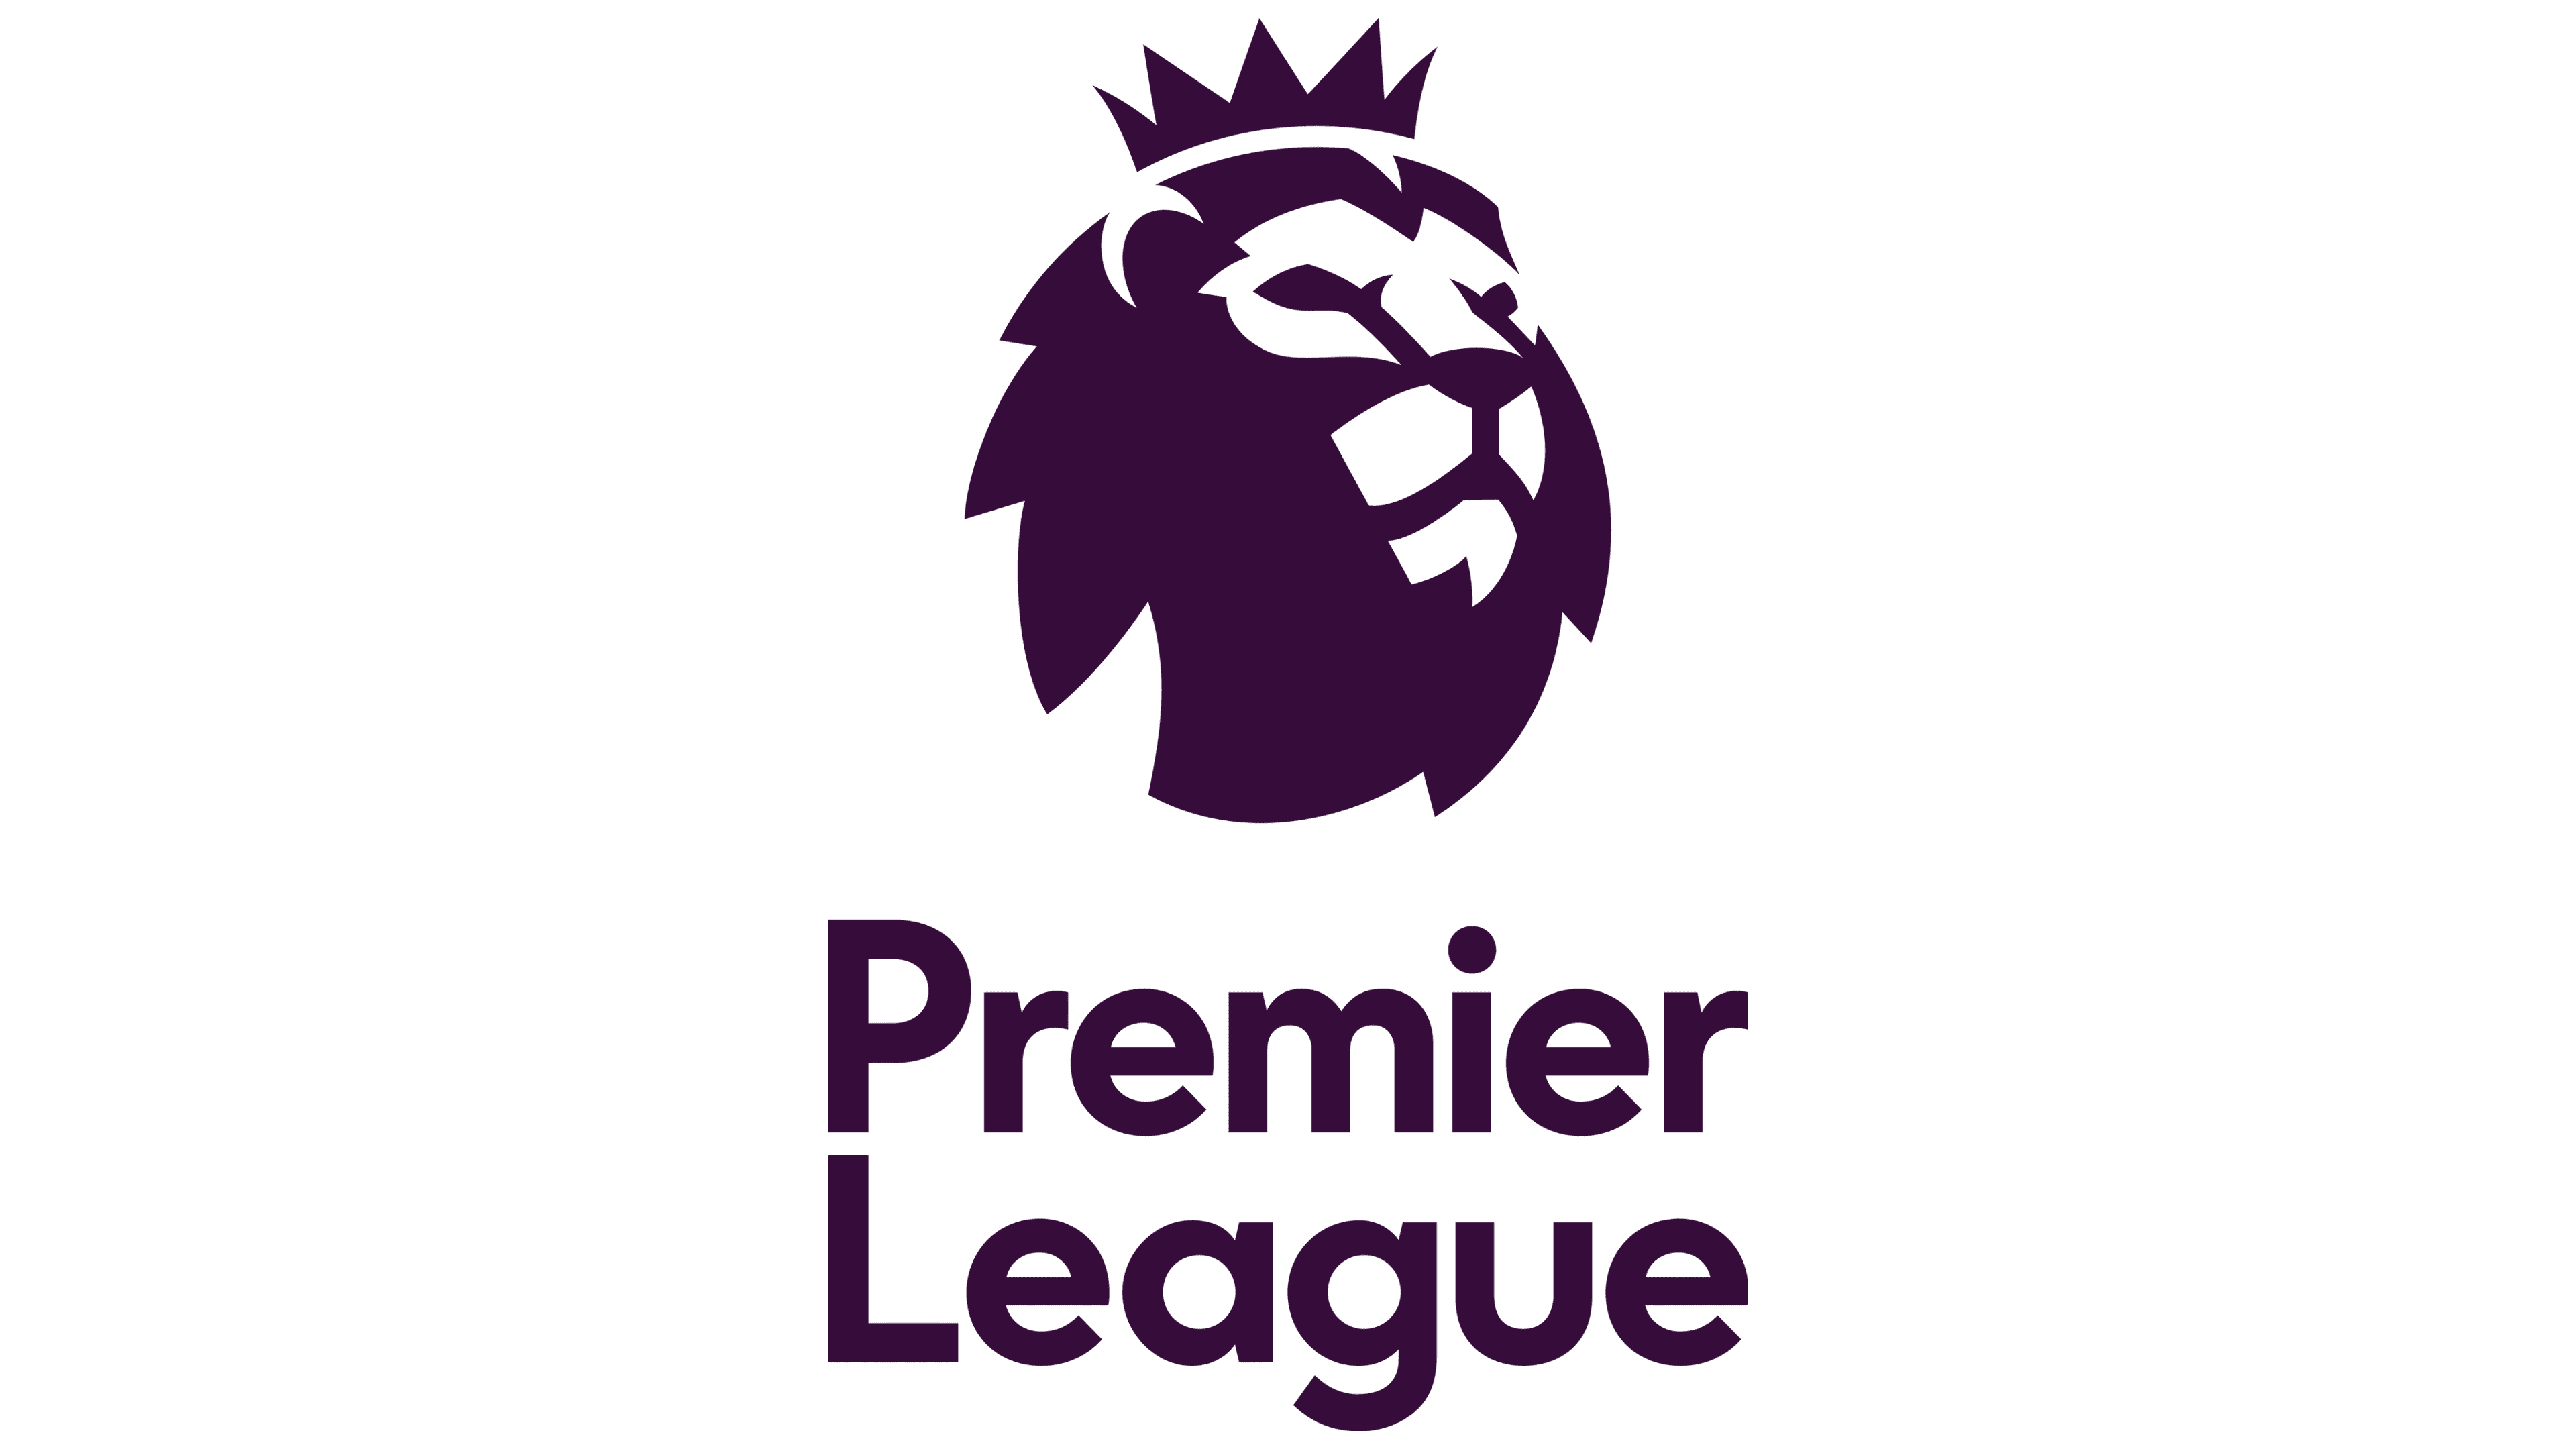 Premier-League-Emblem